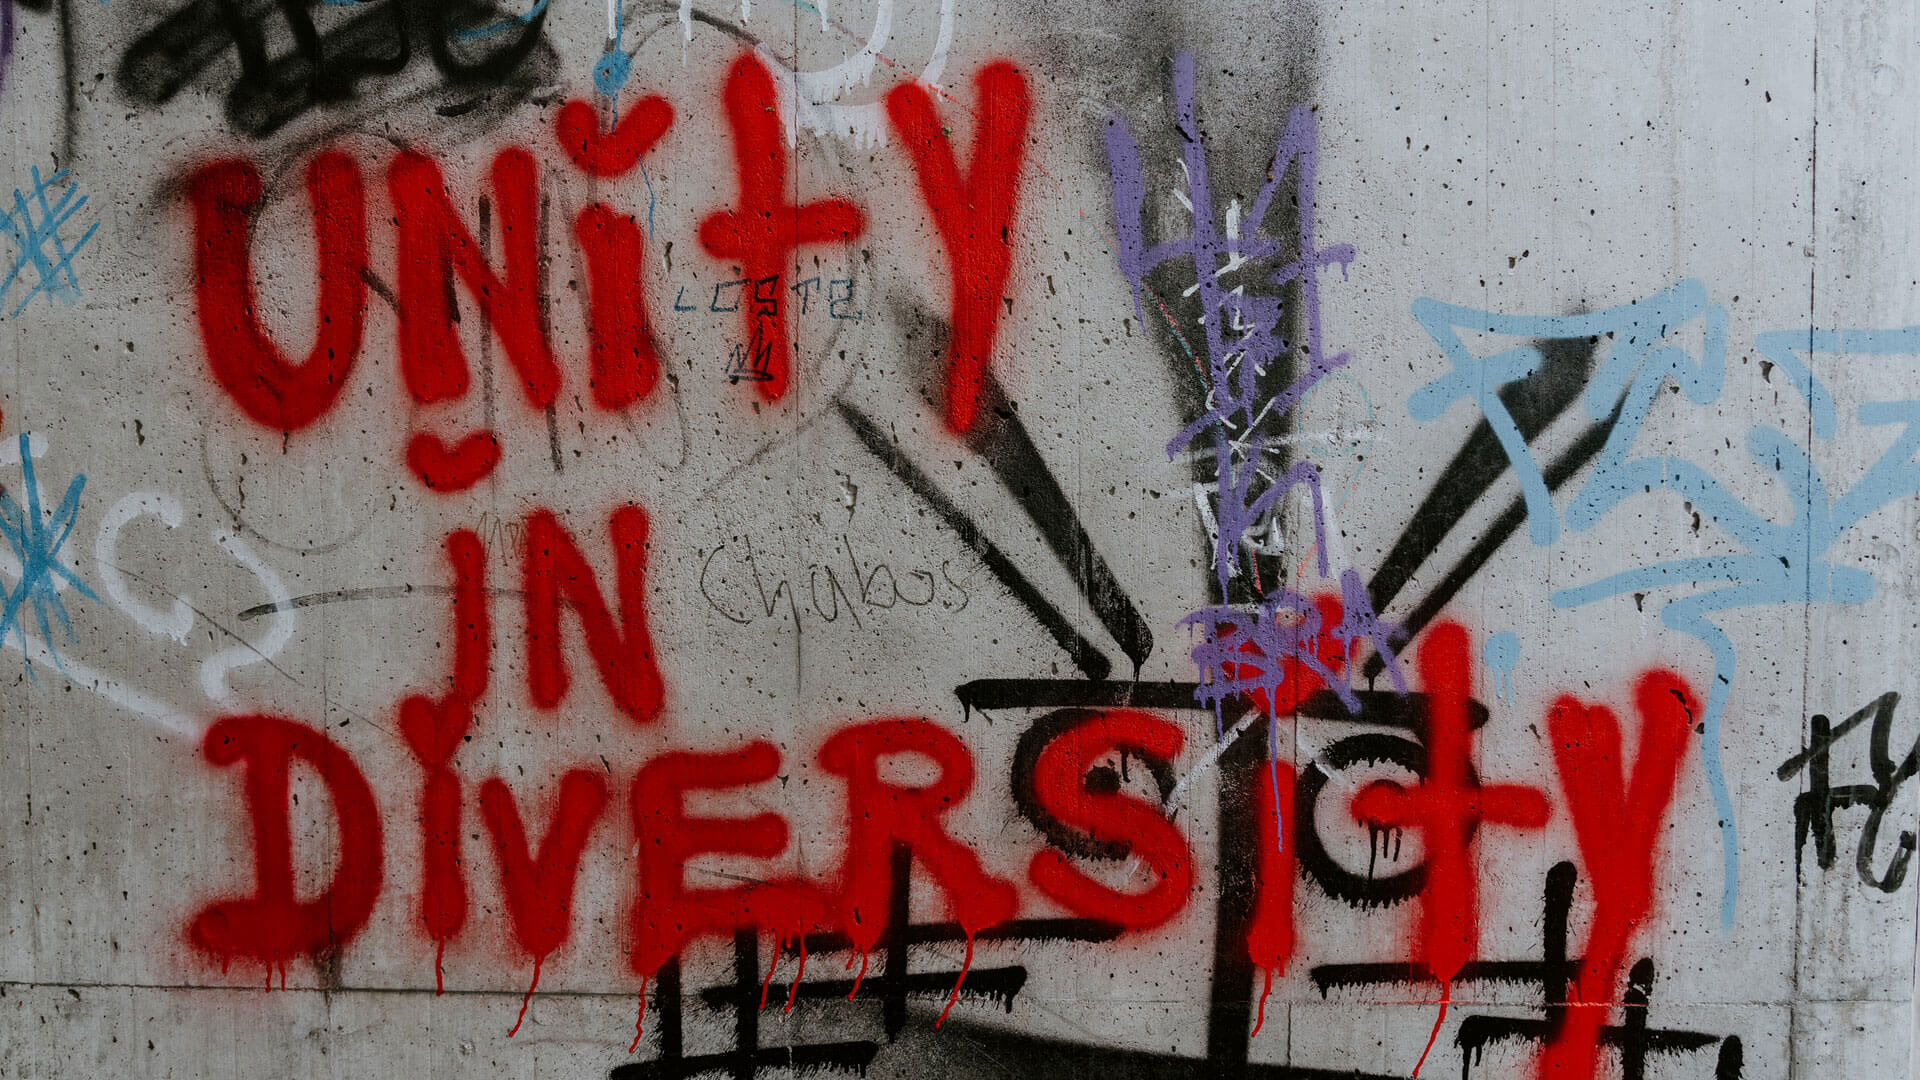 Graffiti na parede com a frase "Unity in diversity"